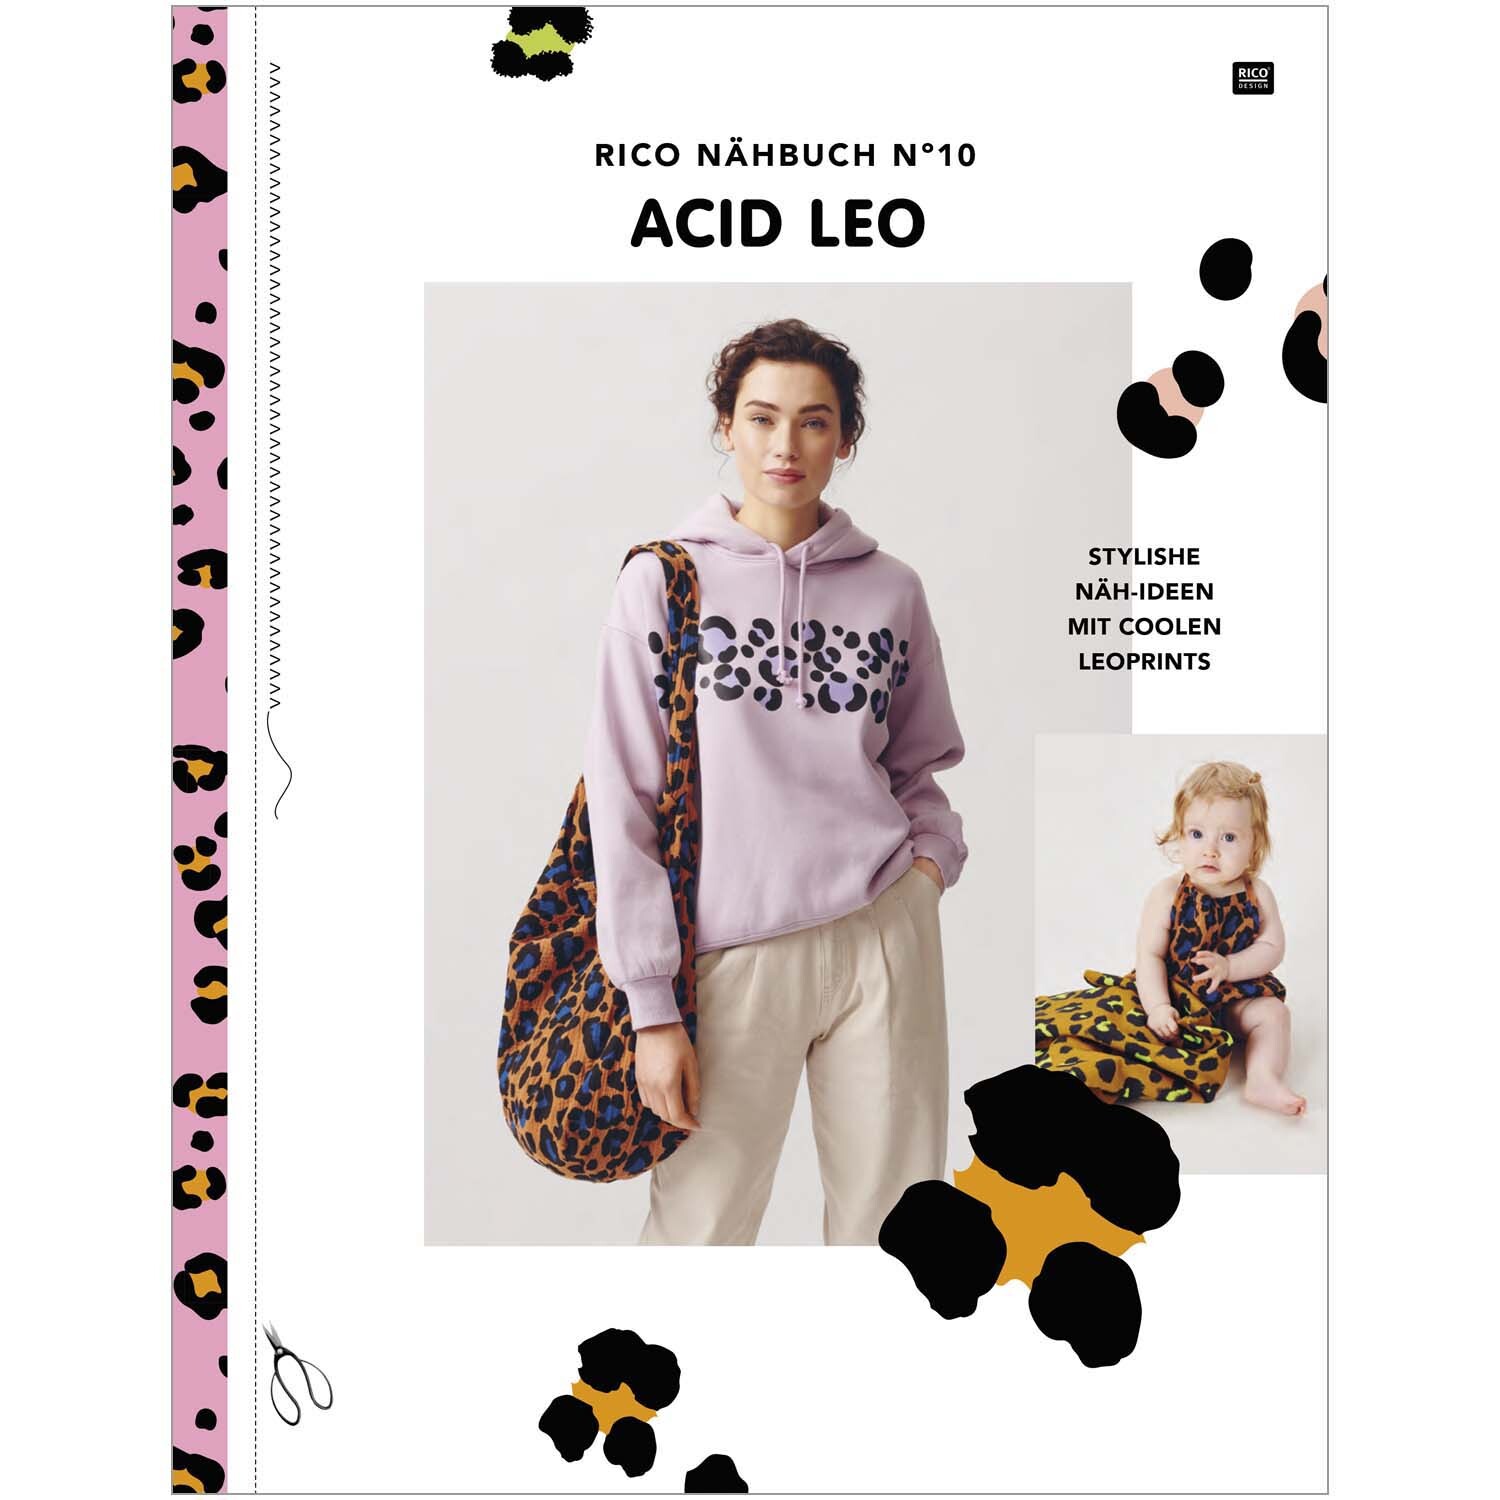 Das kleine Rico Nähbuch Acid Leo